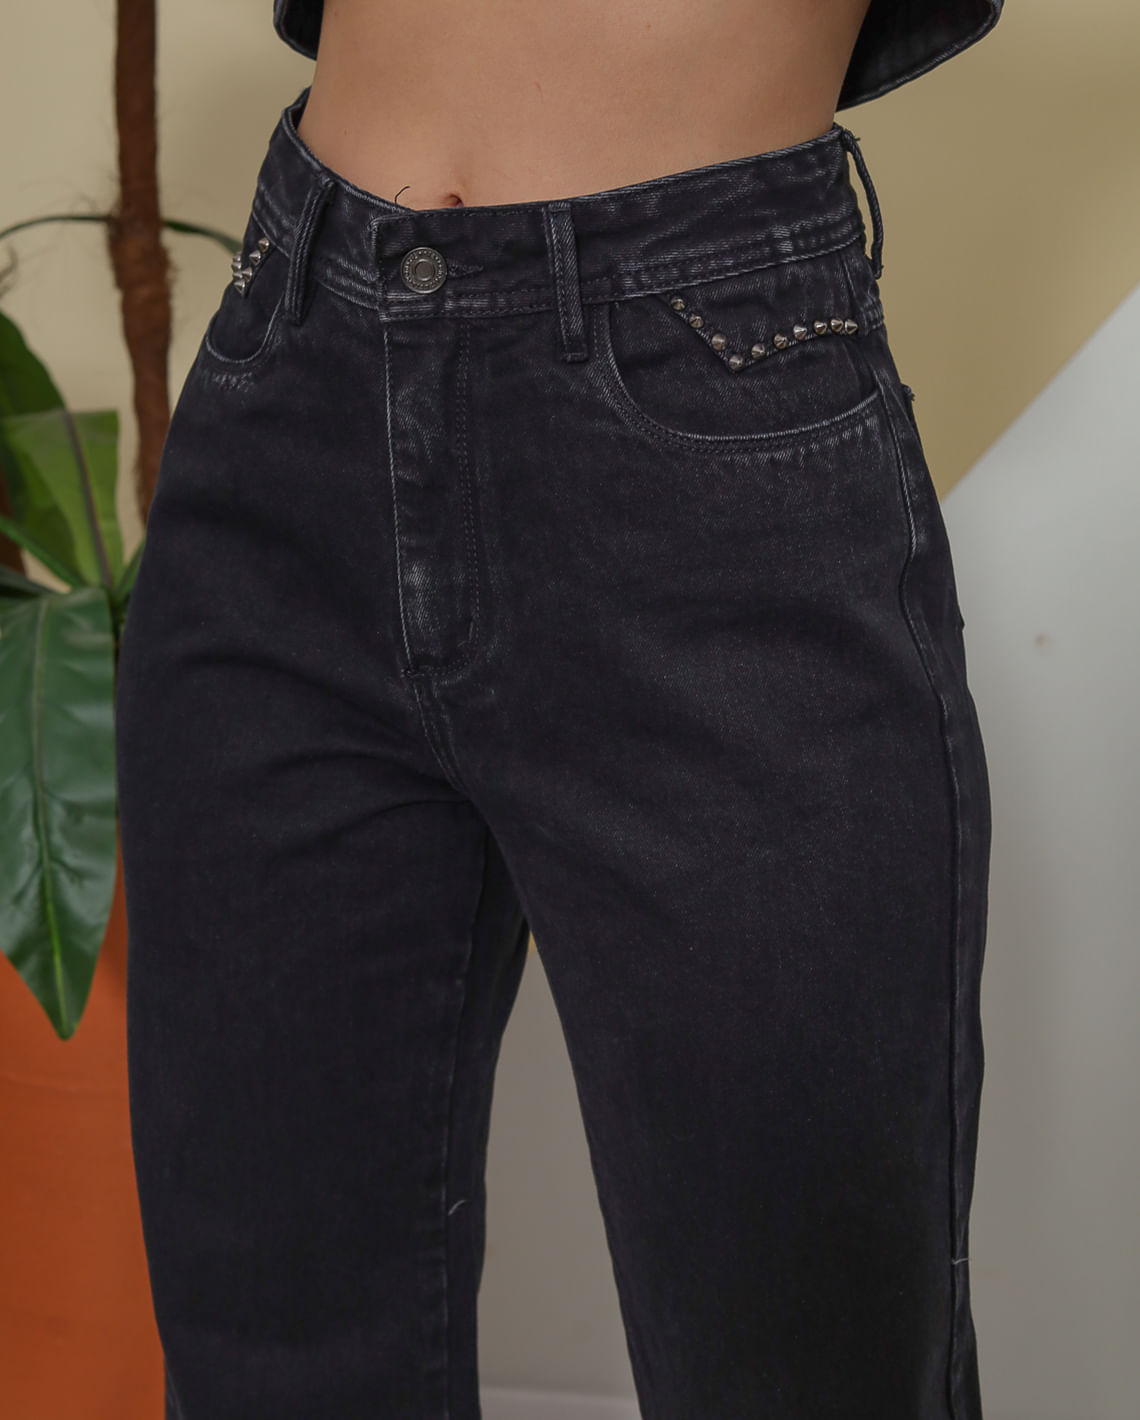 Calça Preta Feminina Consciência Jeans WIDE - Calça Jeans Feminina